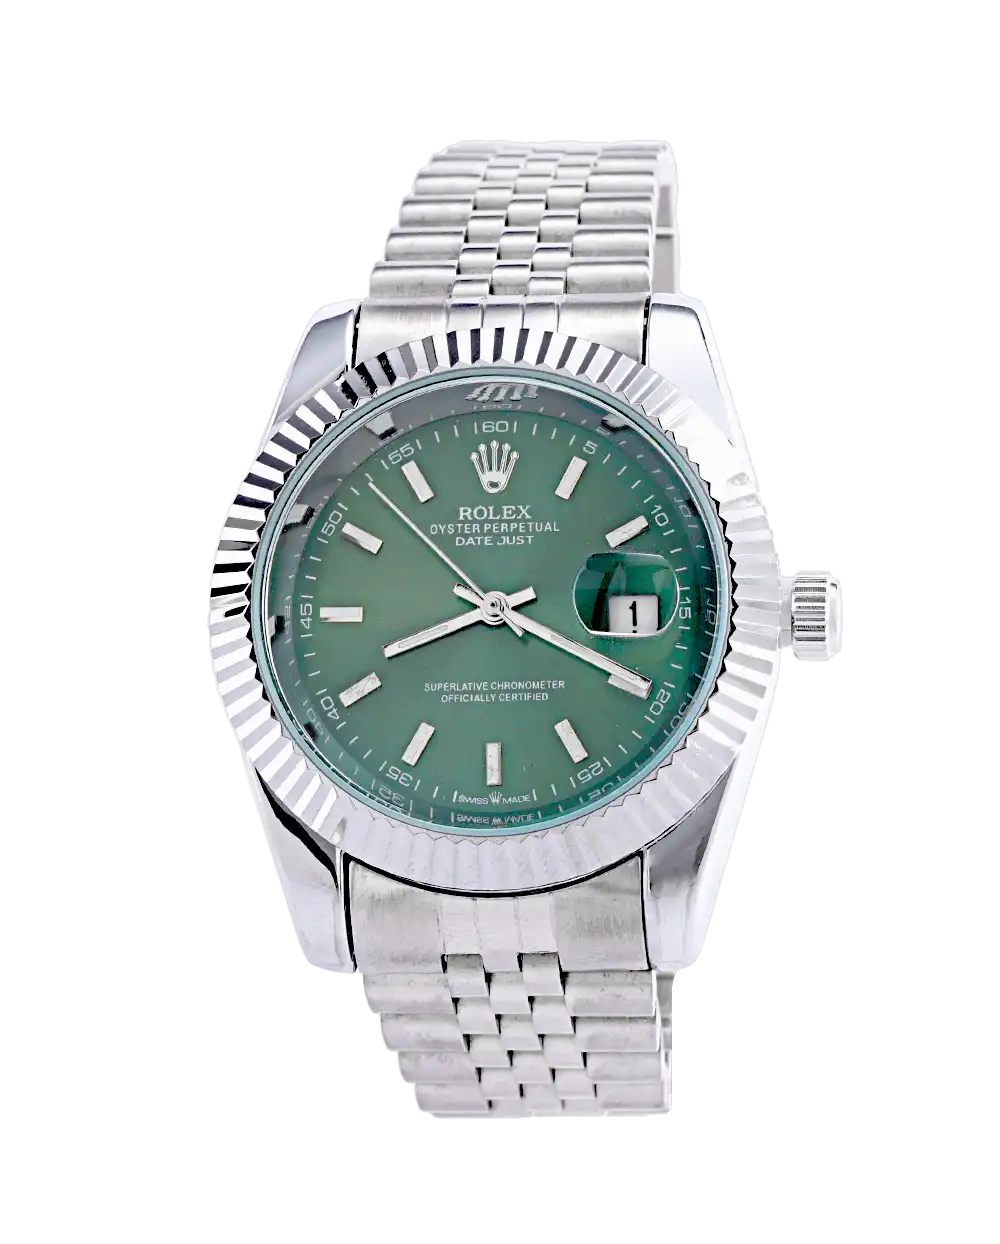 خرید ساعت مچی مردانه رولکس ROLEX طرح دیت جاست مدل 1669 صفحه سبز همراه با جعبه ی ساعت و ارسال رایگان به سراسر ایران درب منزل | رولکس datejust